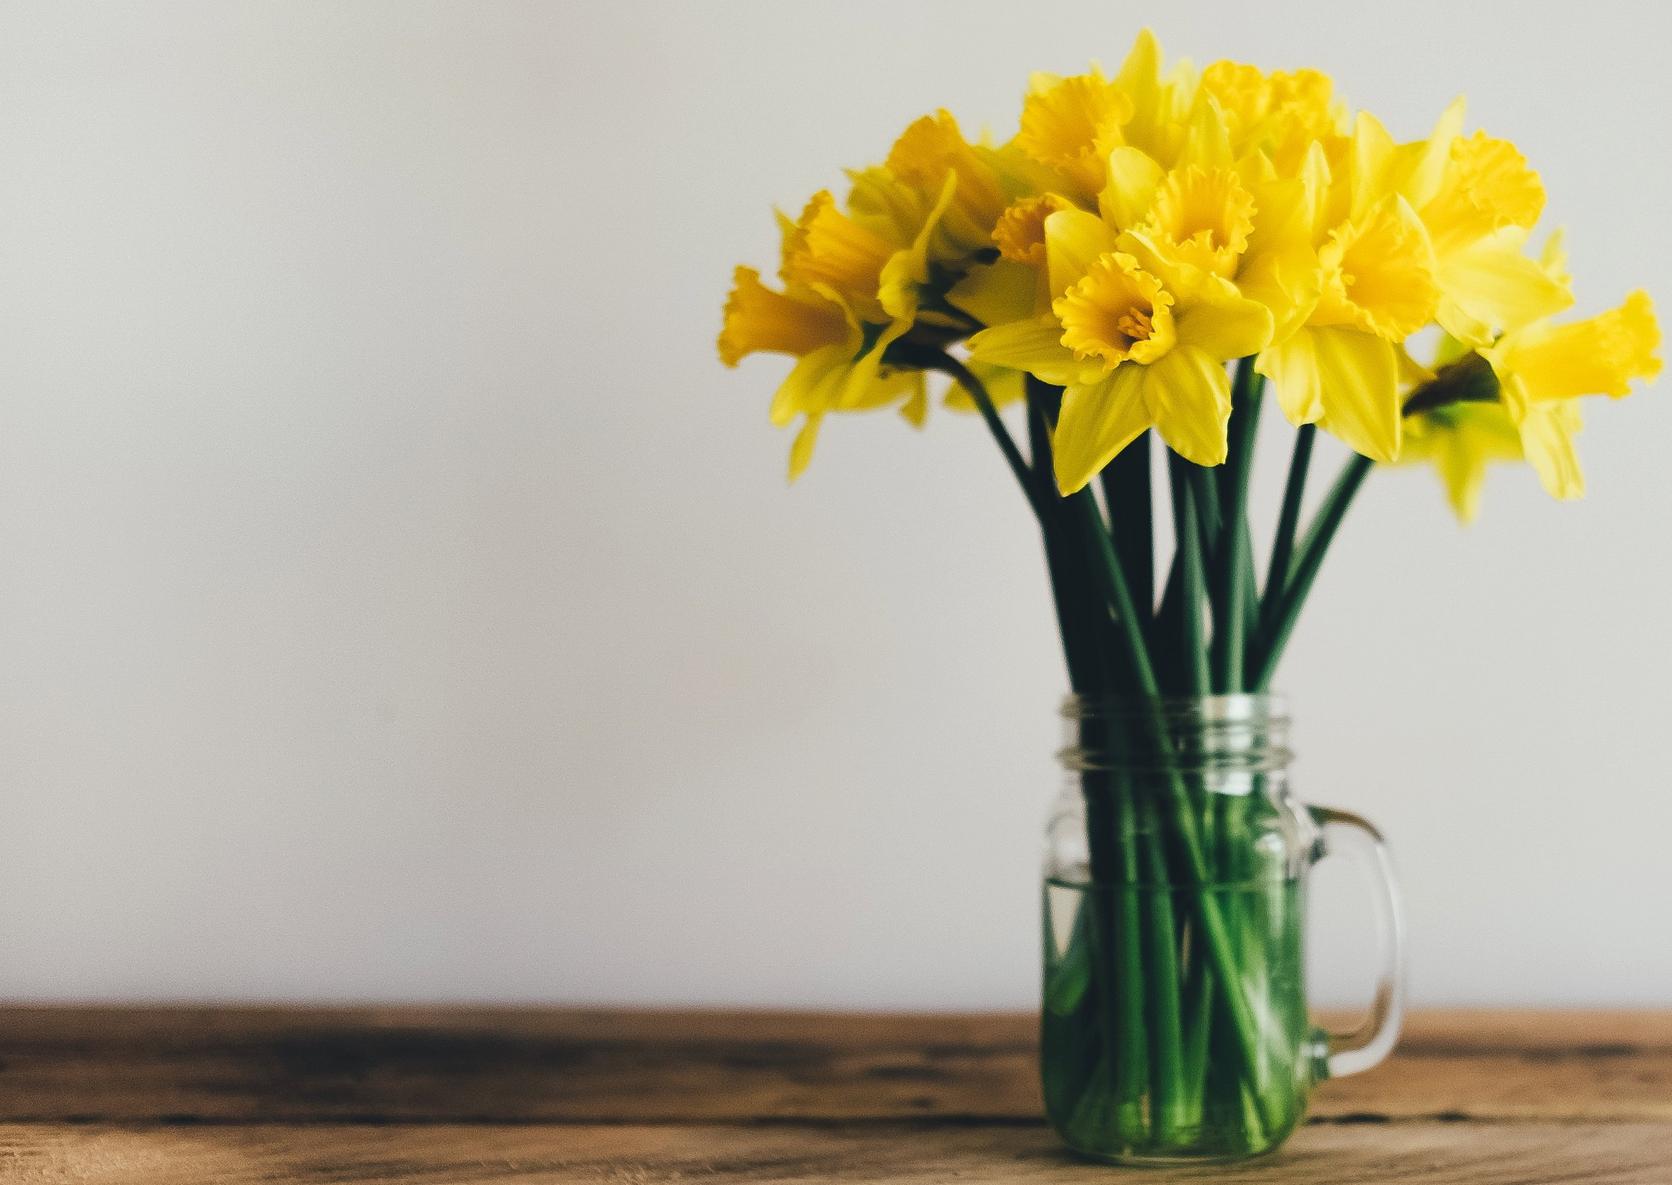 daffodil-spring-flowers